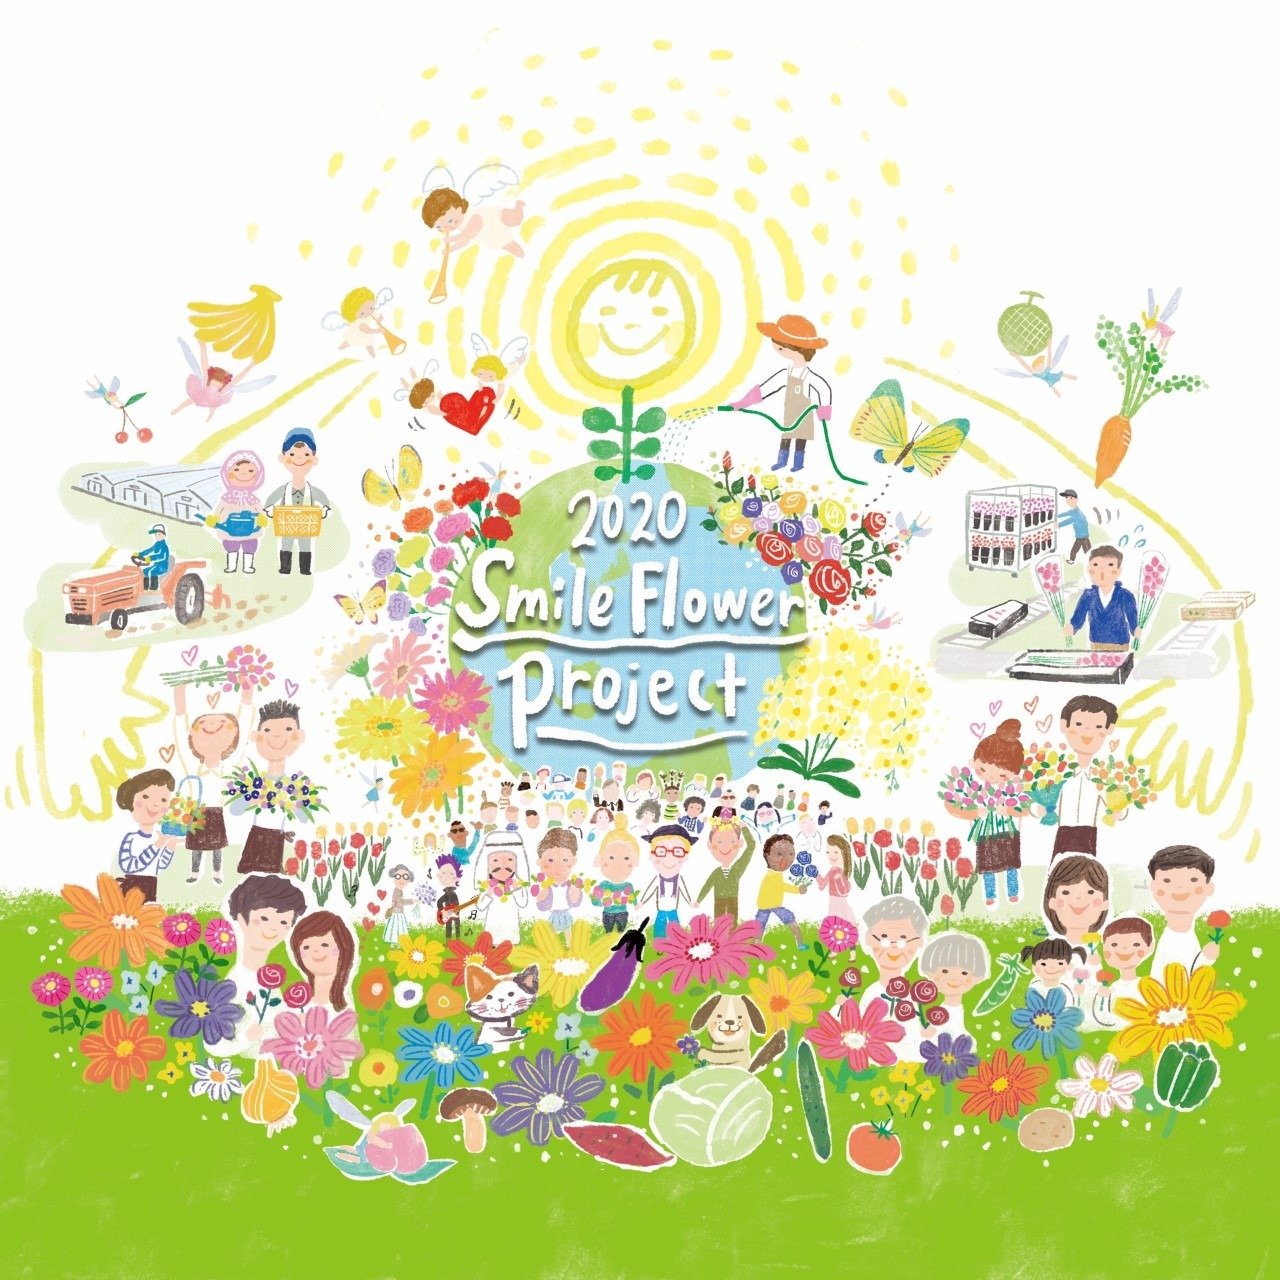 2020 smile flower project　ドライブスルーでのお花の販売を5月6日よりスタートいたします。